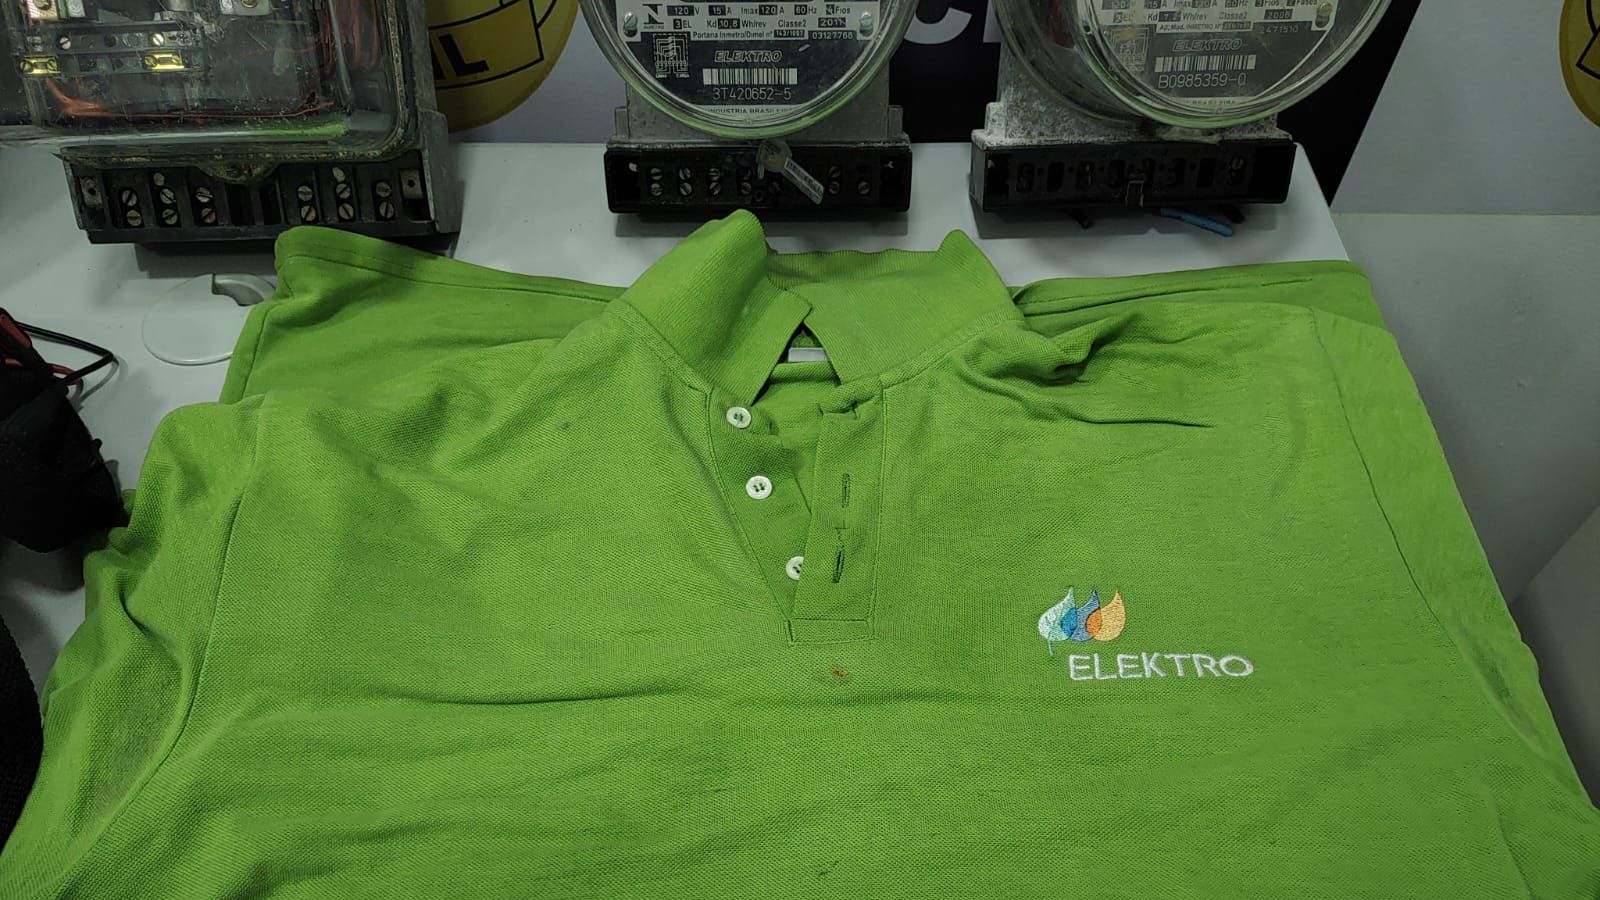 Camisa semelhante ao da empresa Elektro apreendida pela policia civil